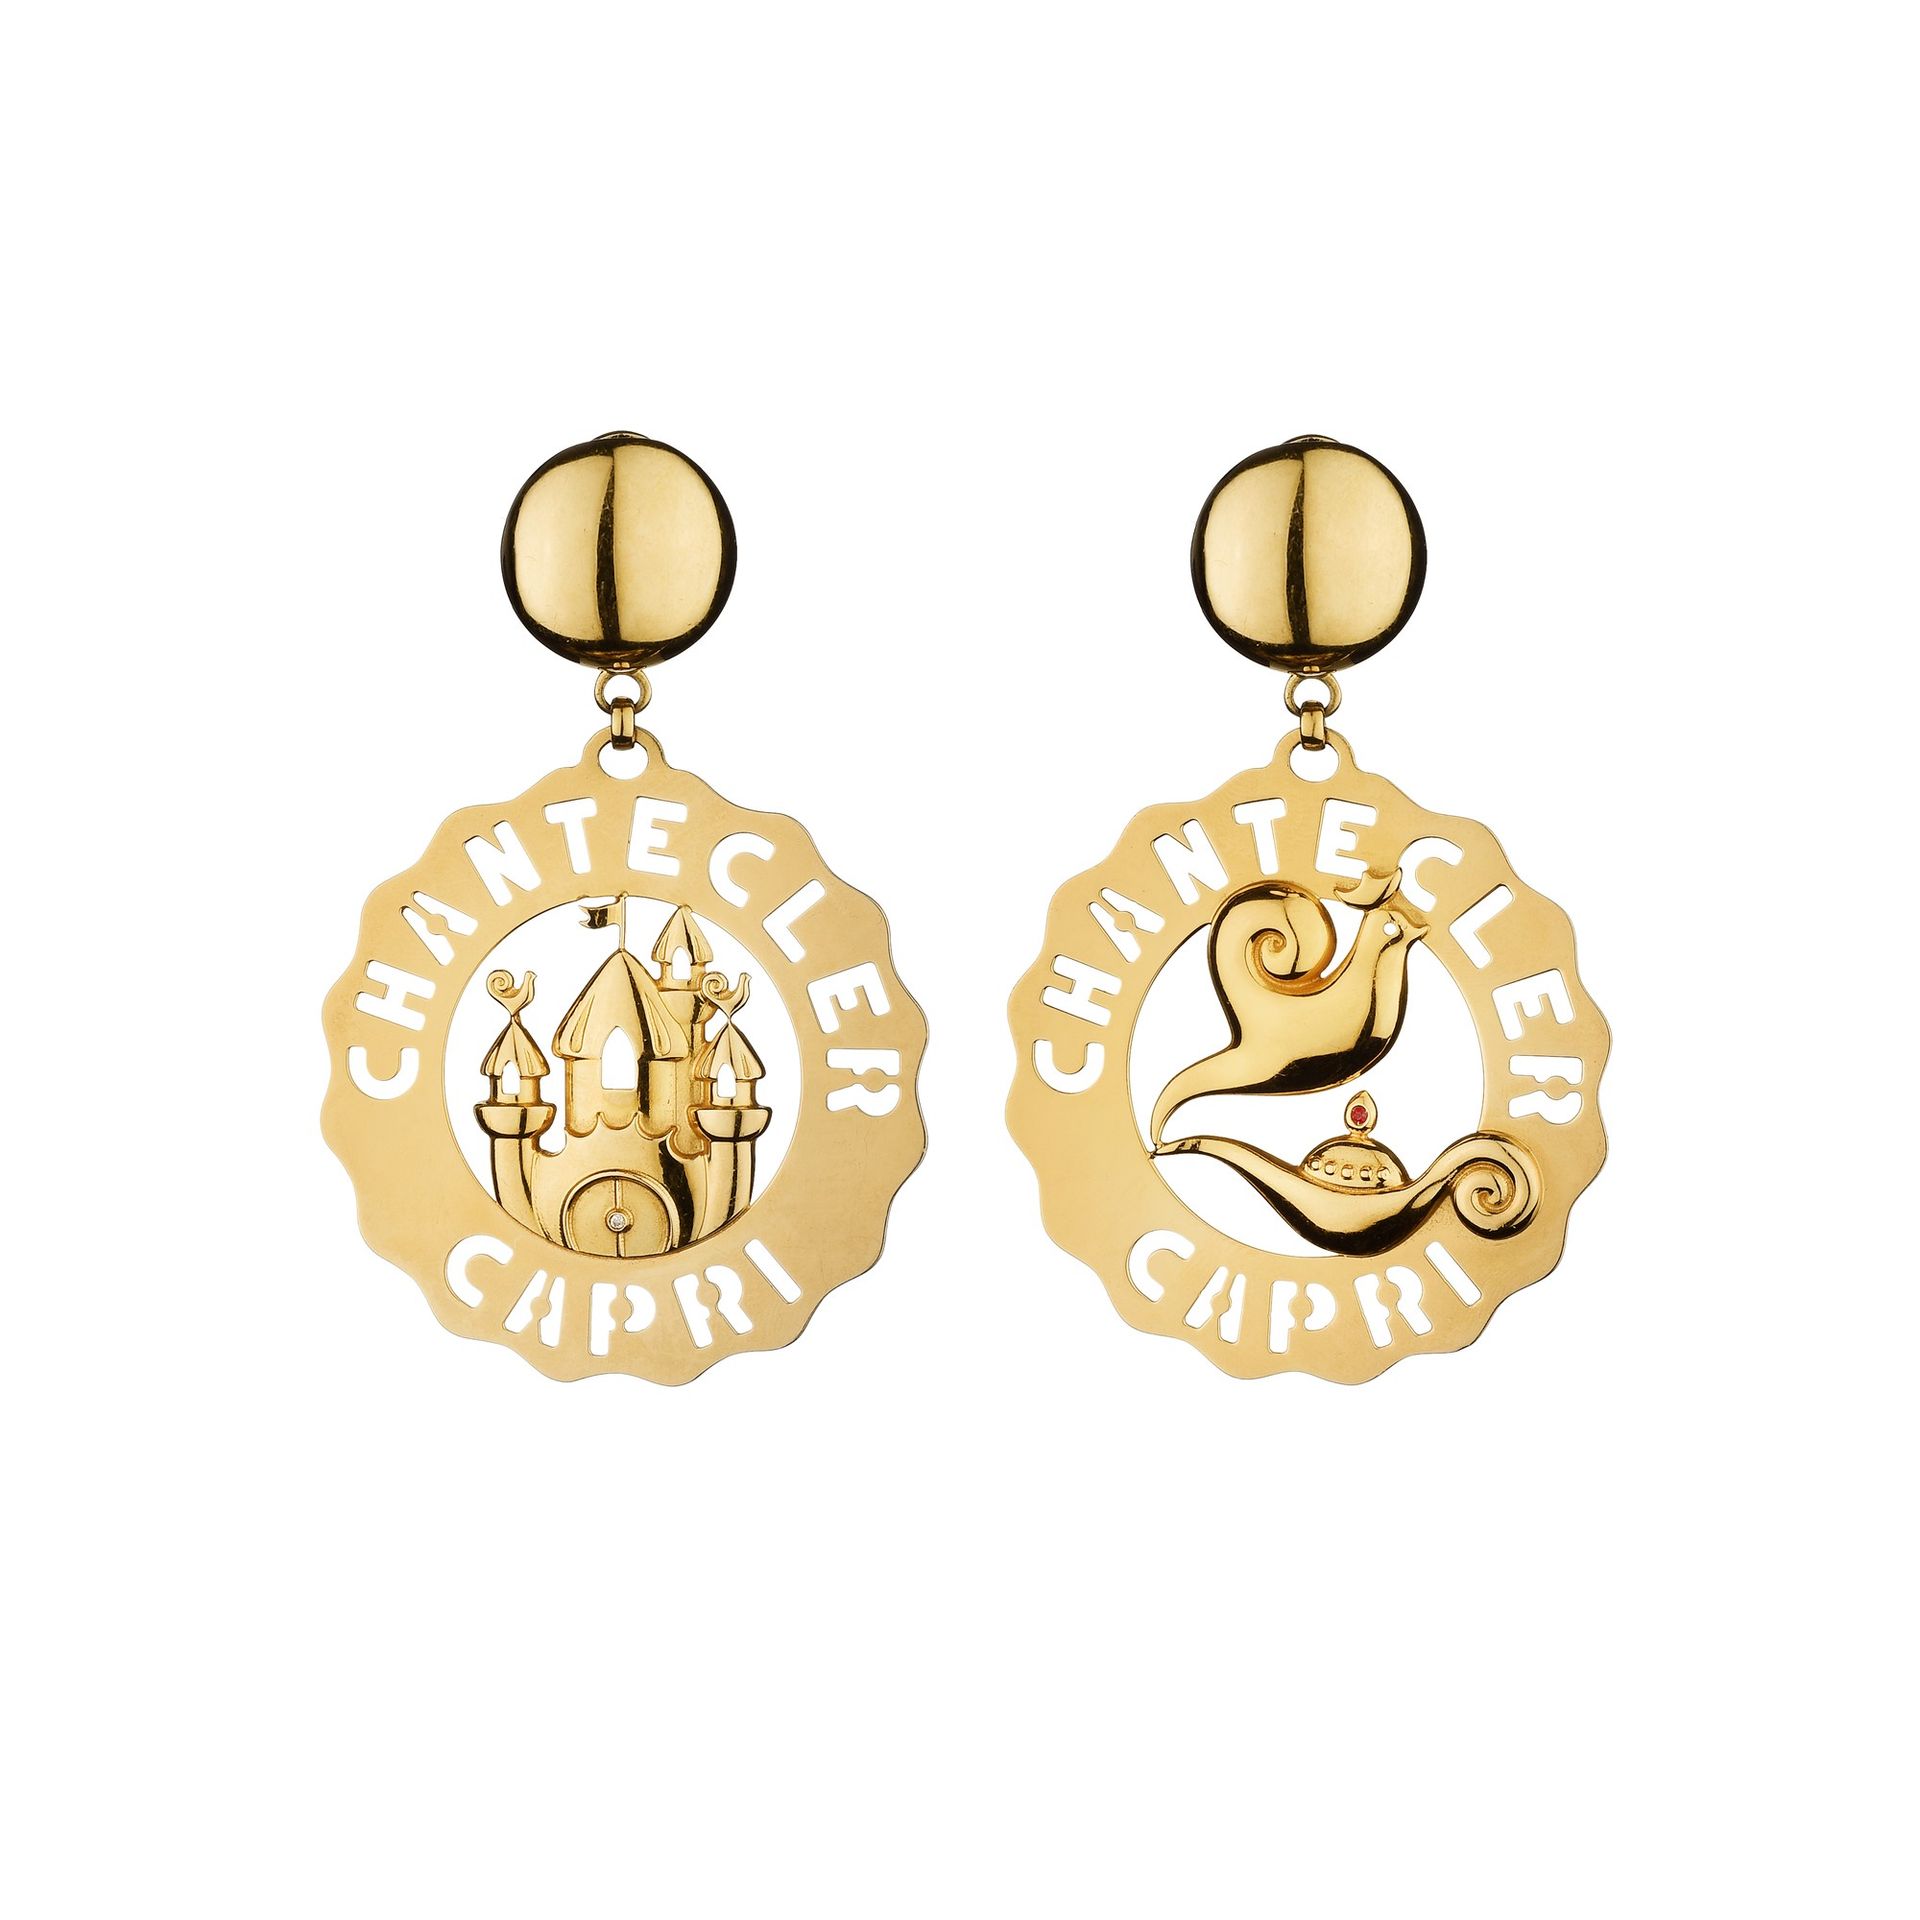 CHANTECLER Ohrringe mit Logo-Anhänger von Chantecler aus 18 Karat Gelbgold.

Abm&hellip;